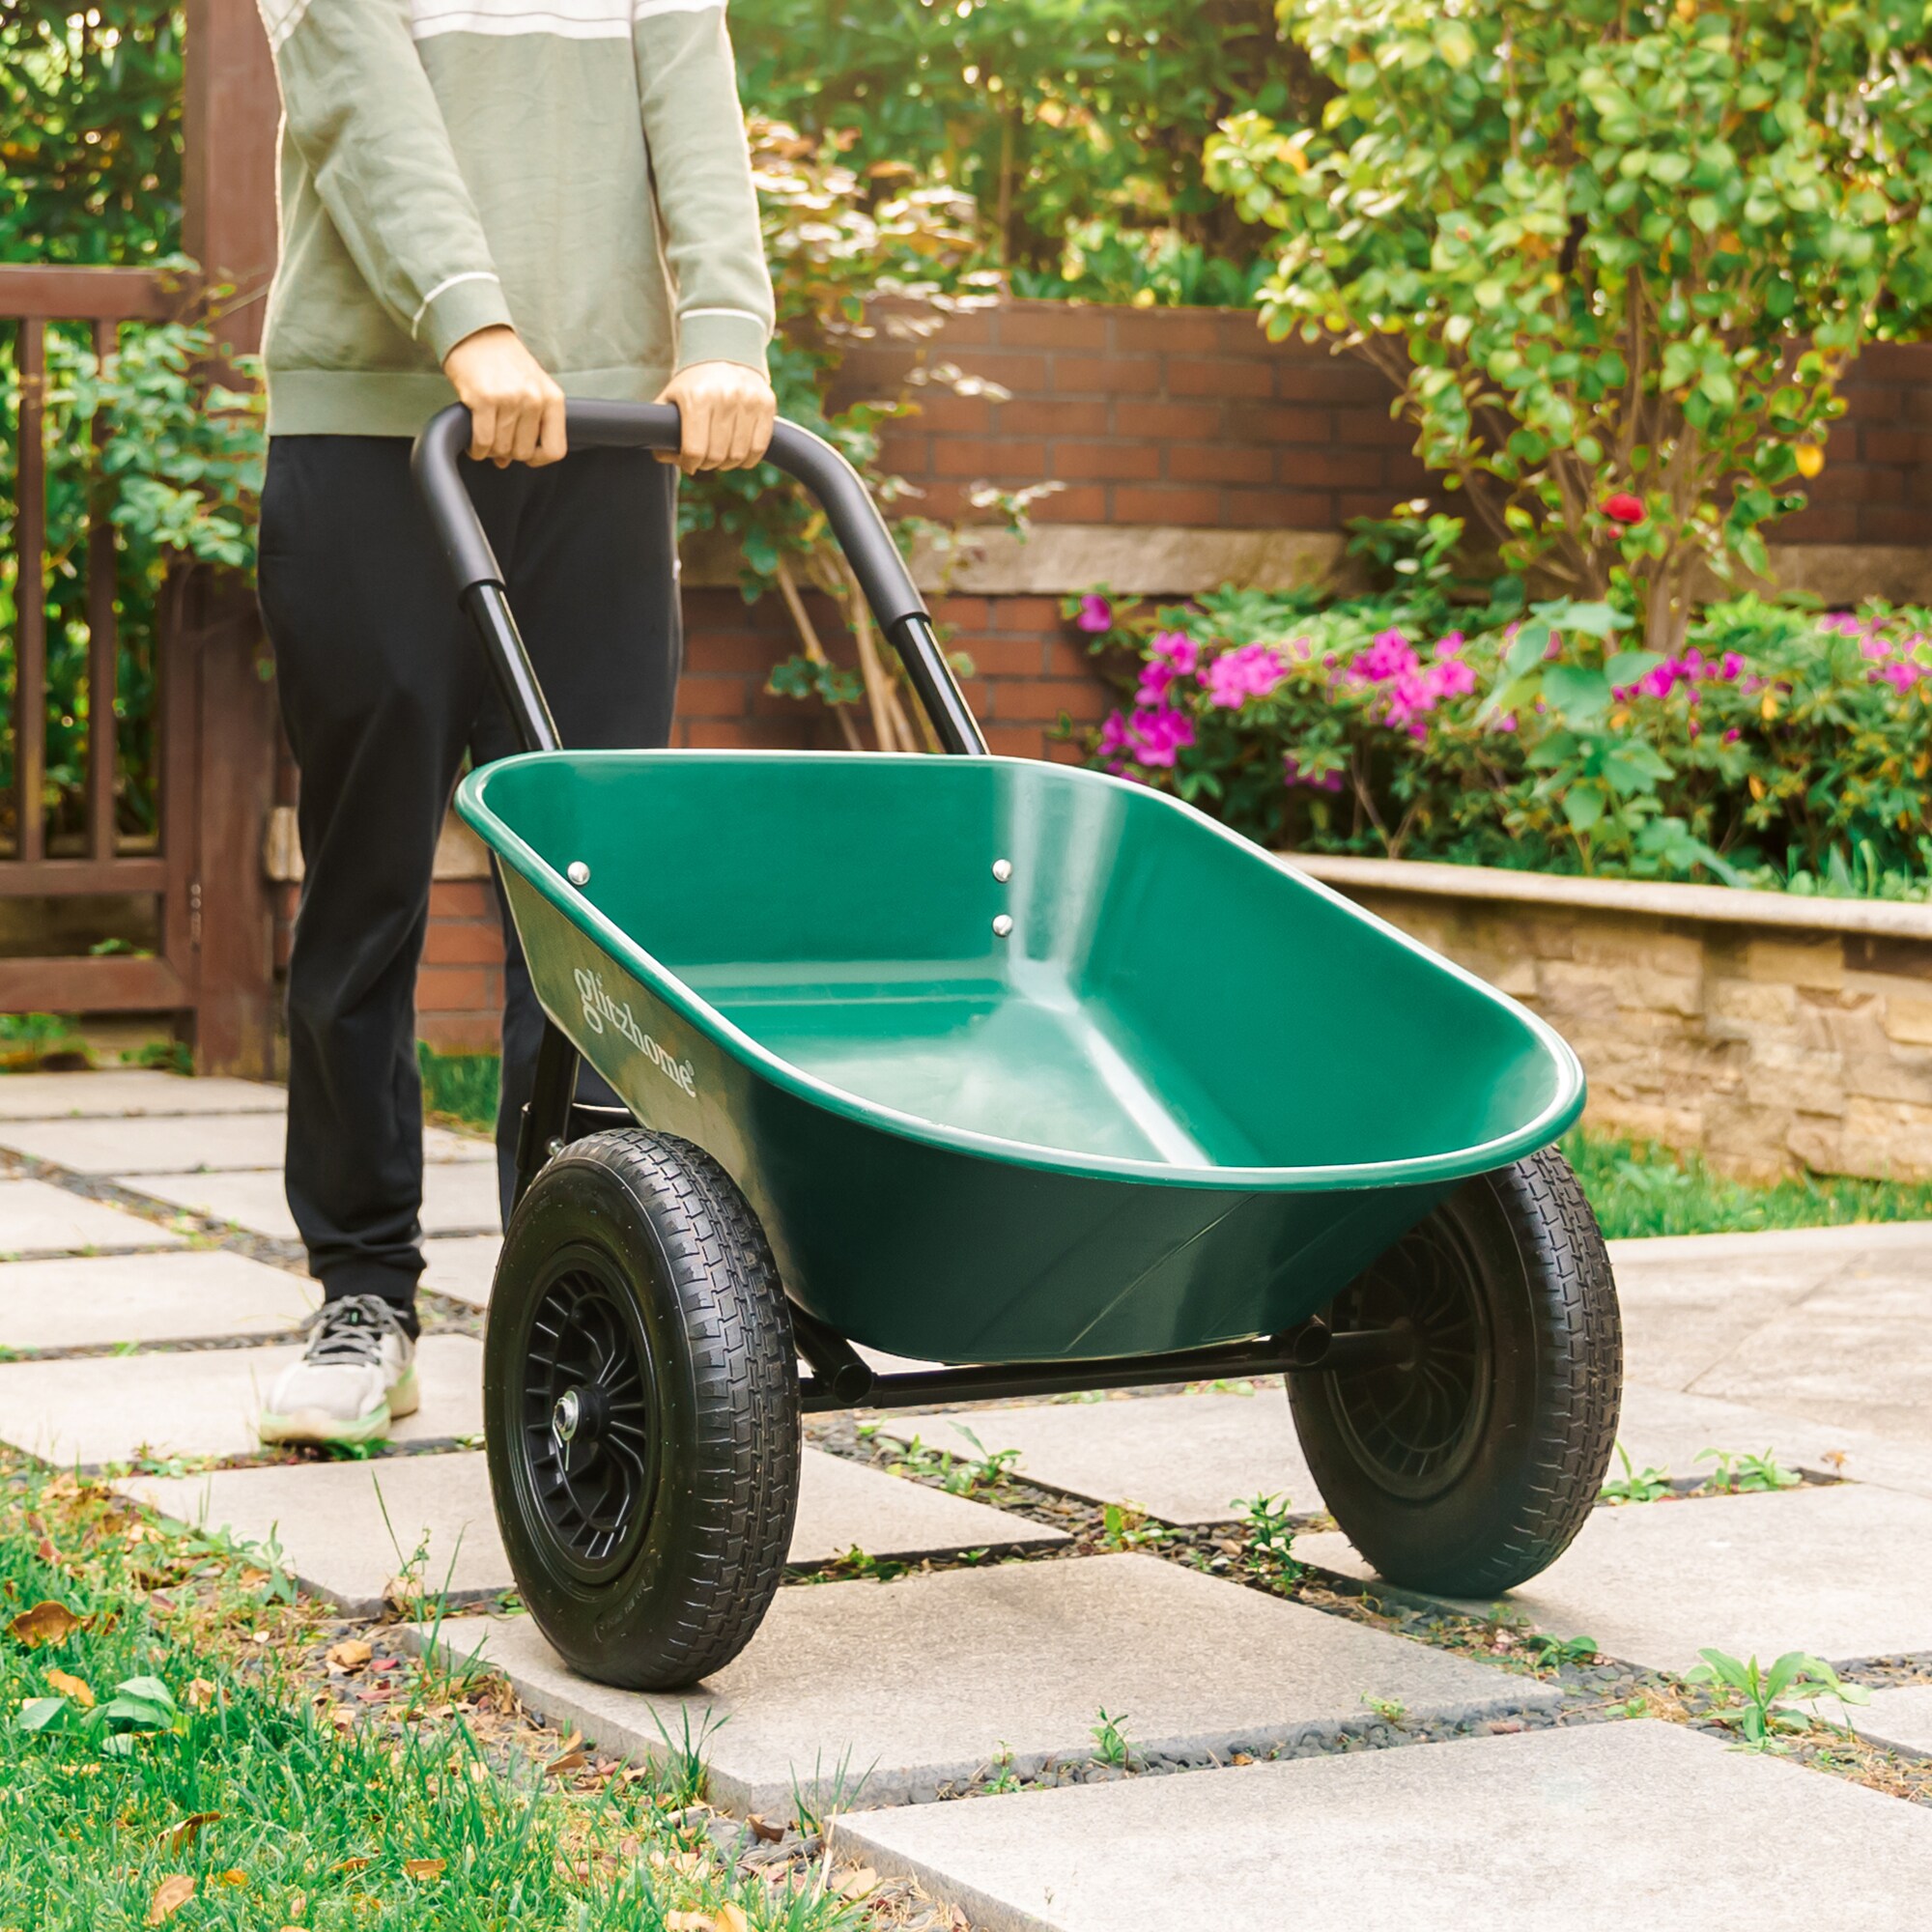 Glitzhome 21 Gallon Garden Yard Cart with Detachable Leaf Bag, Set